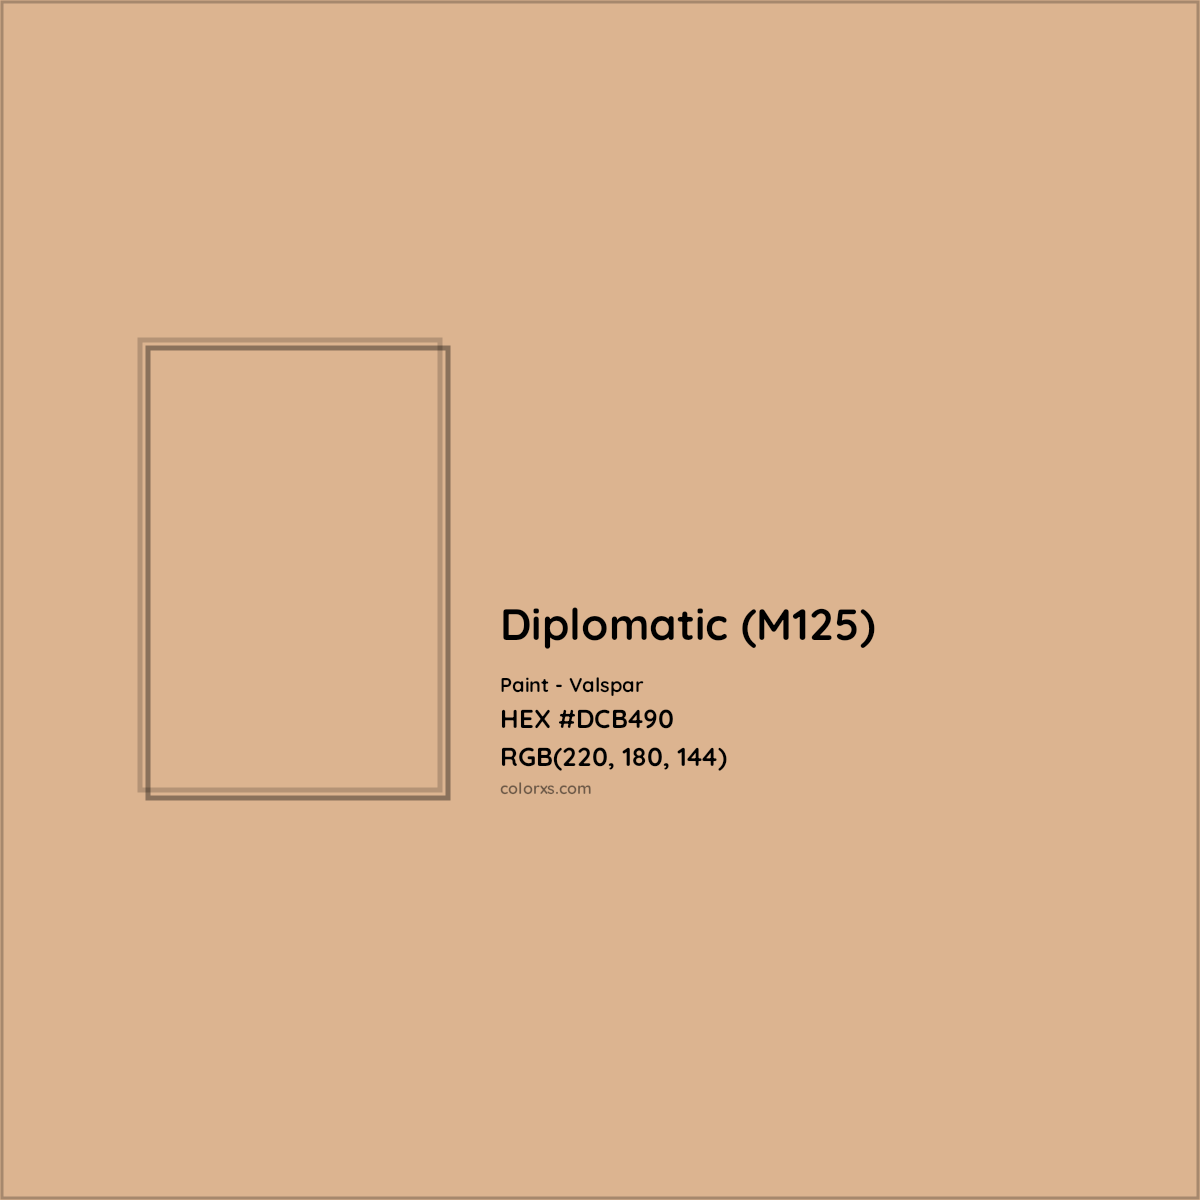 HEX #DCB490 Diplomatic (M125) Paint Valspar - Color Code